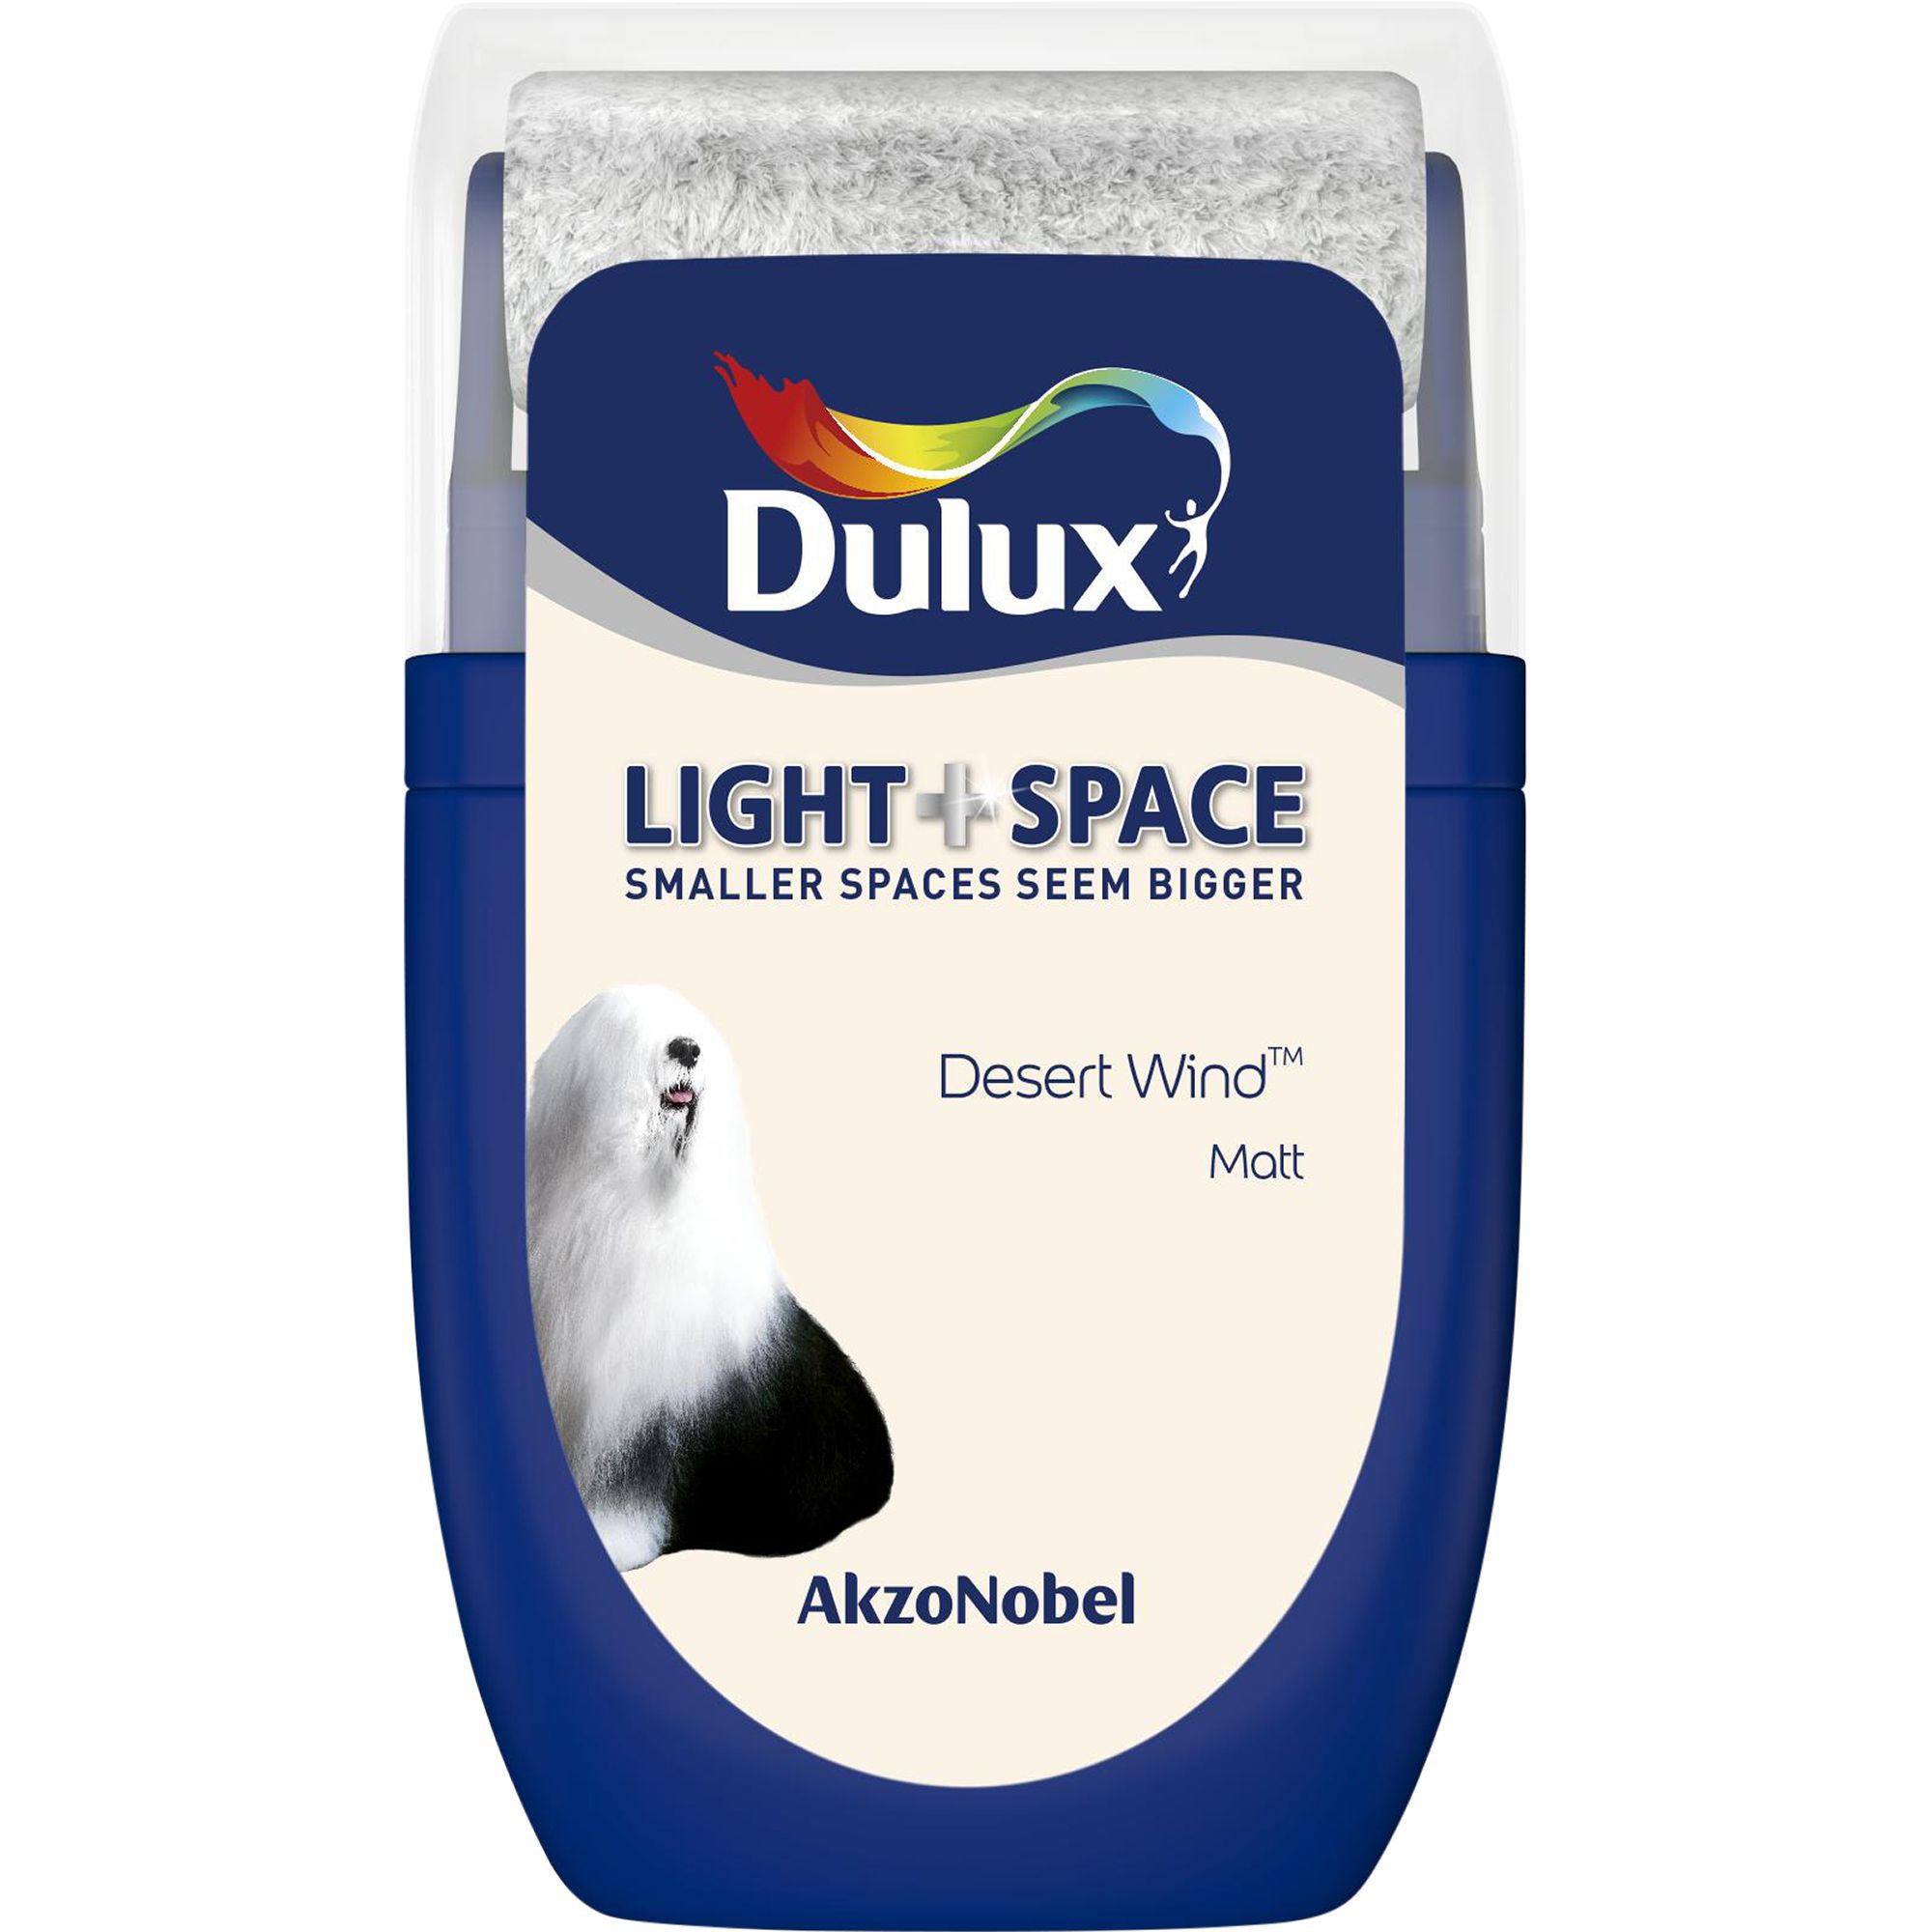 Dulux Light & space Desert wind Matt Emulsion paint 30ml Tester pot